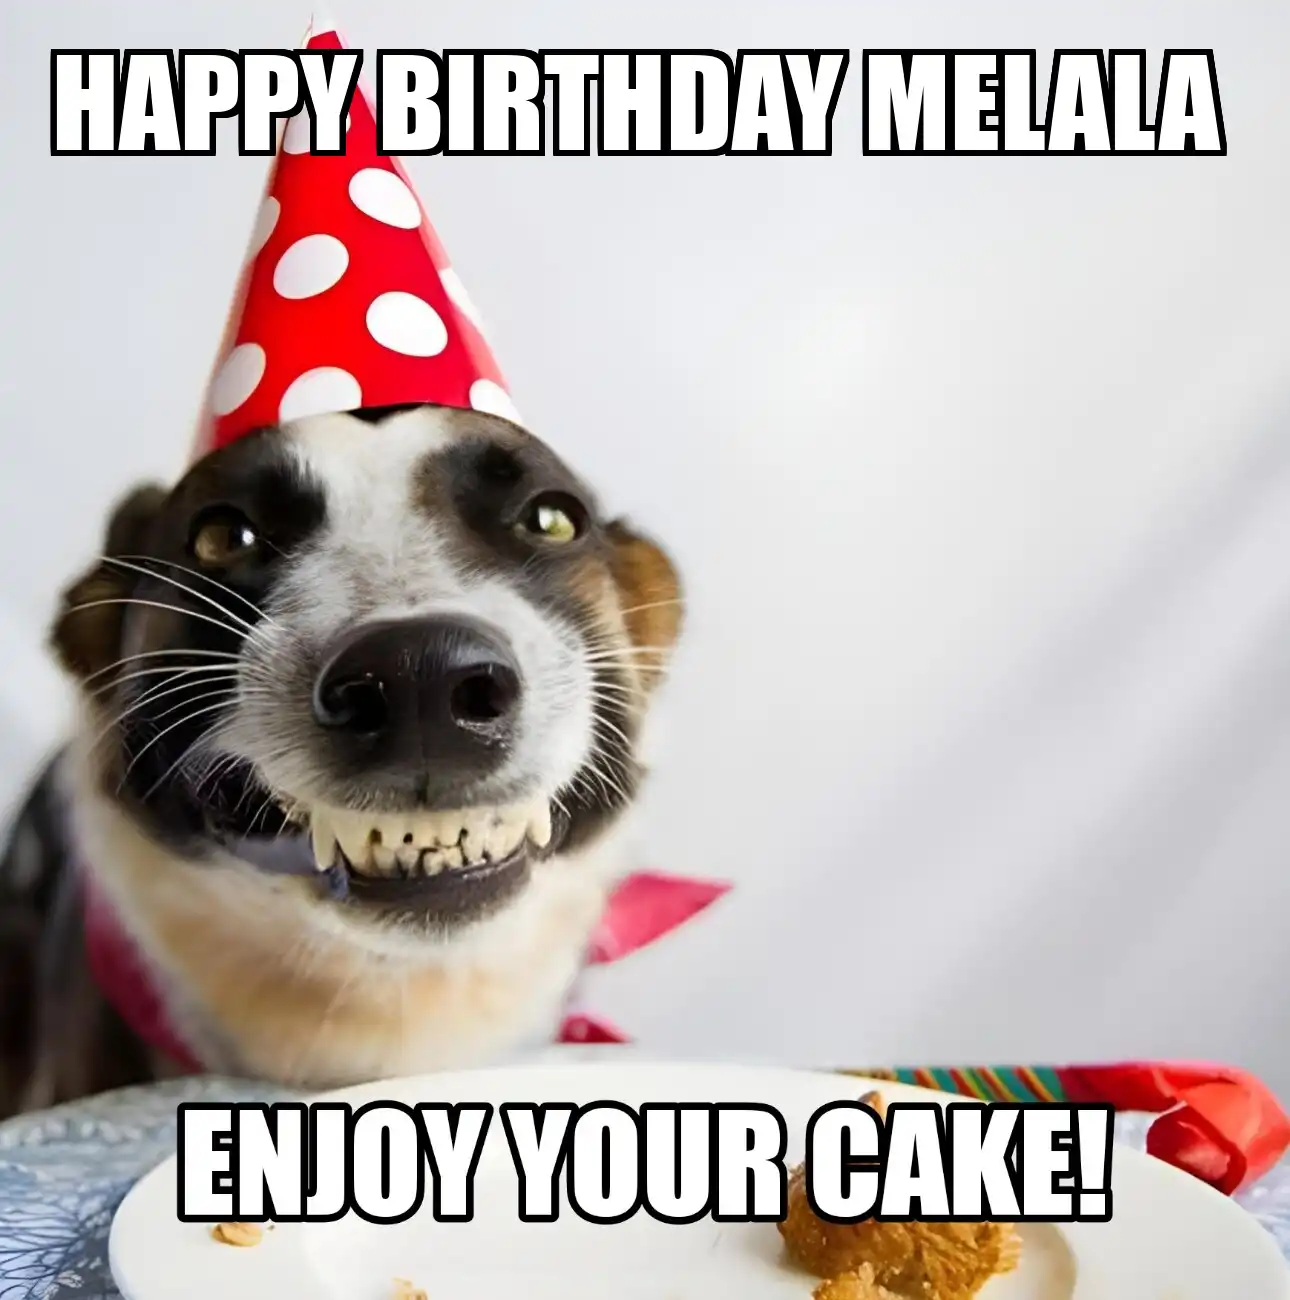 Happy Birthday Melala Enjoy Your Cake Dog Meme